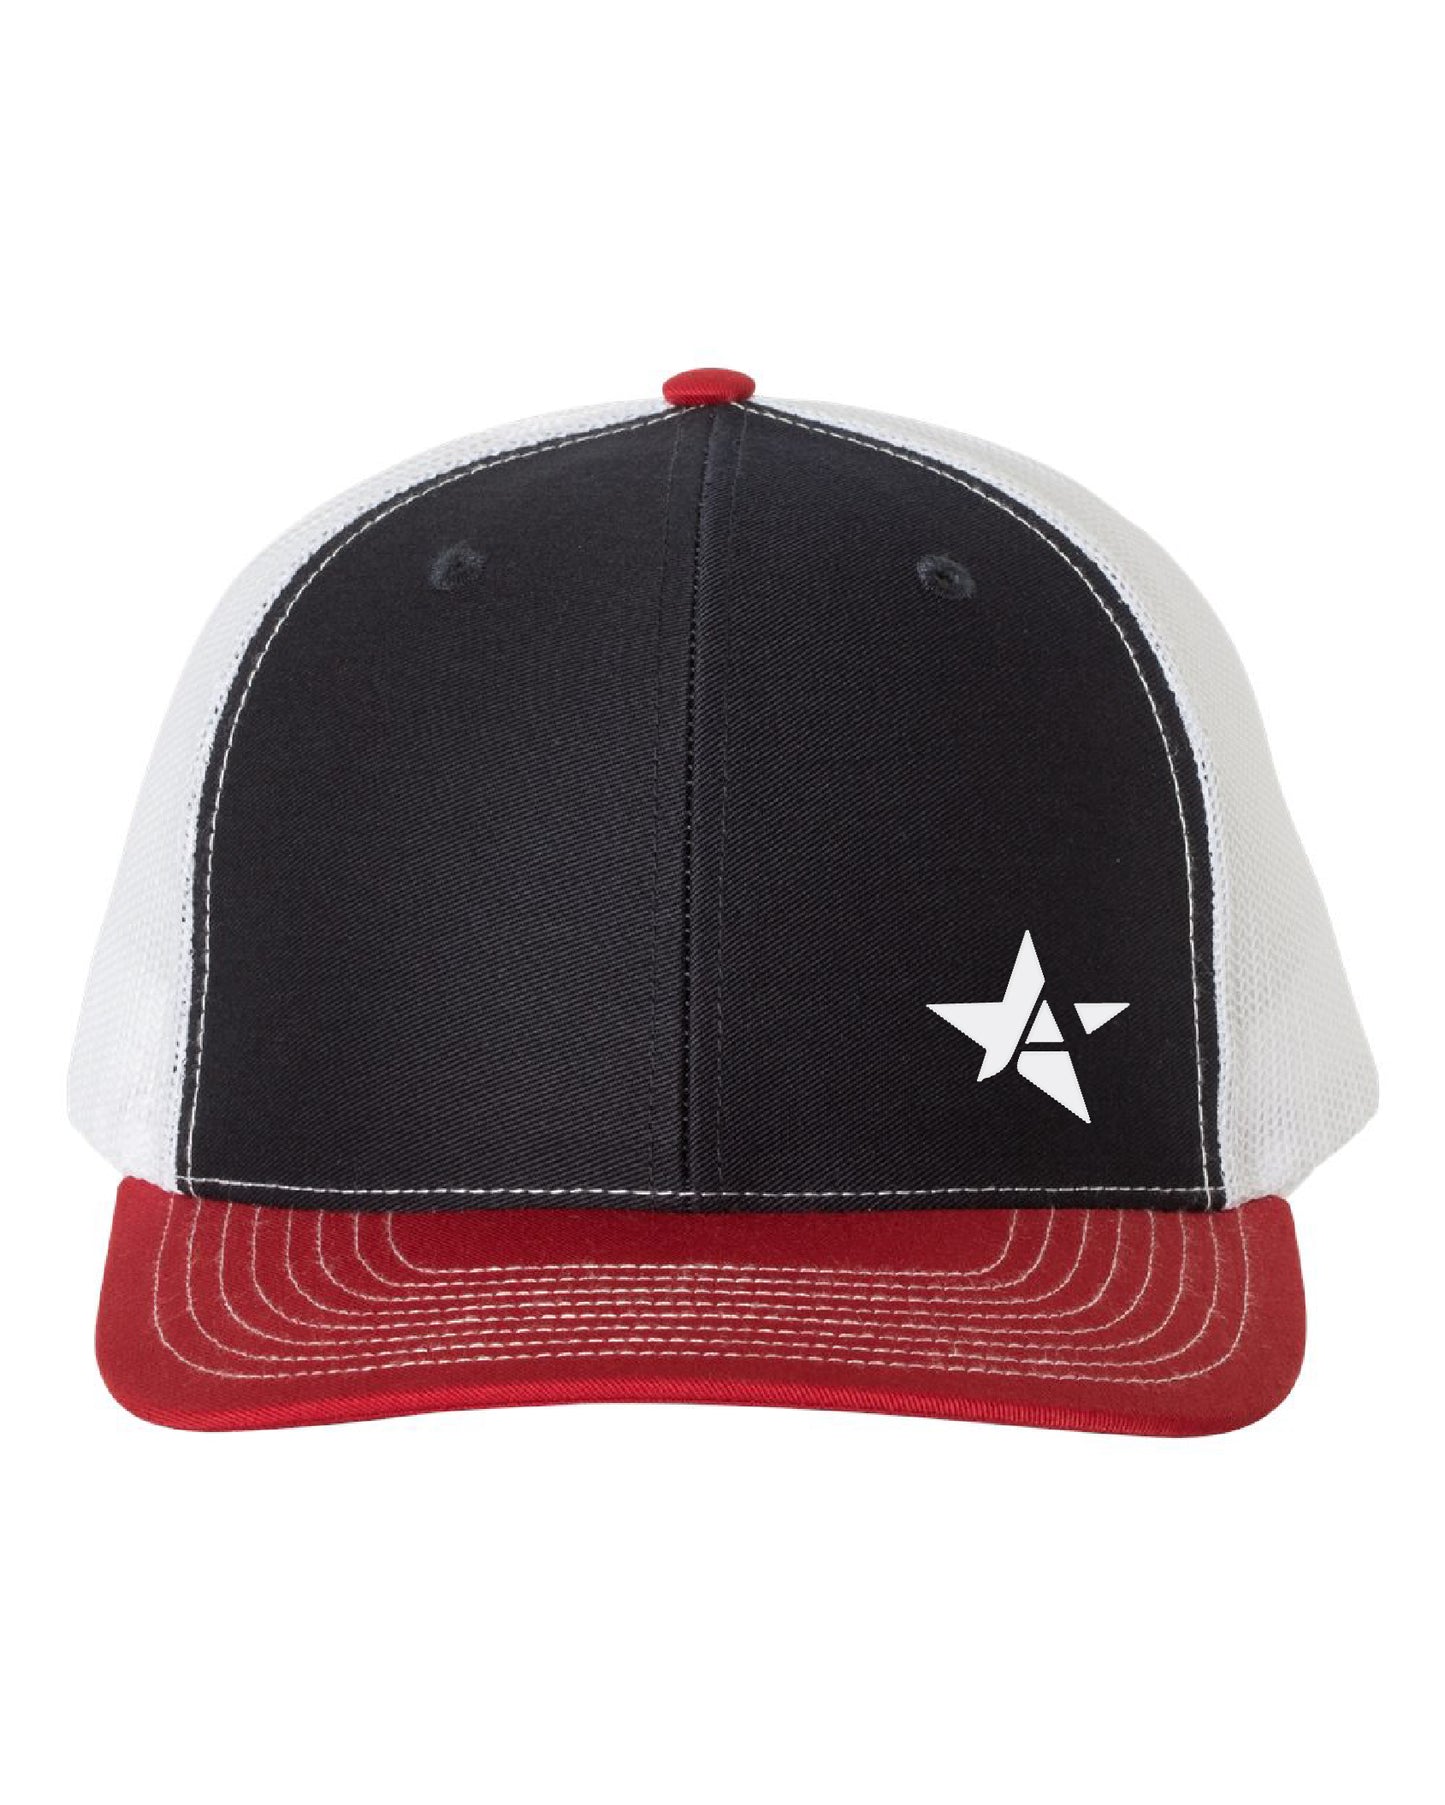 Arlington All Star Hat